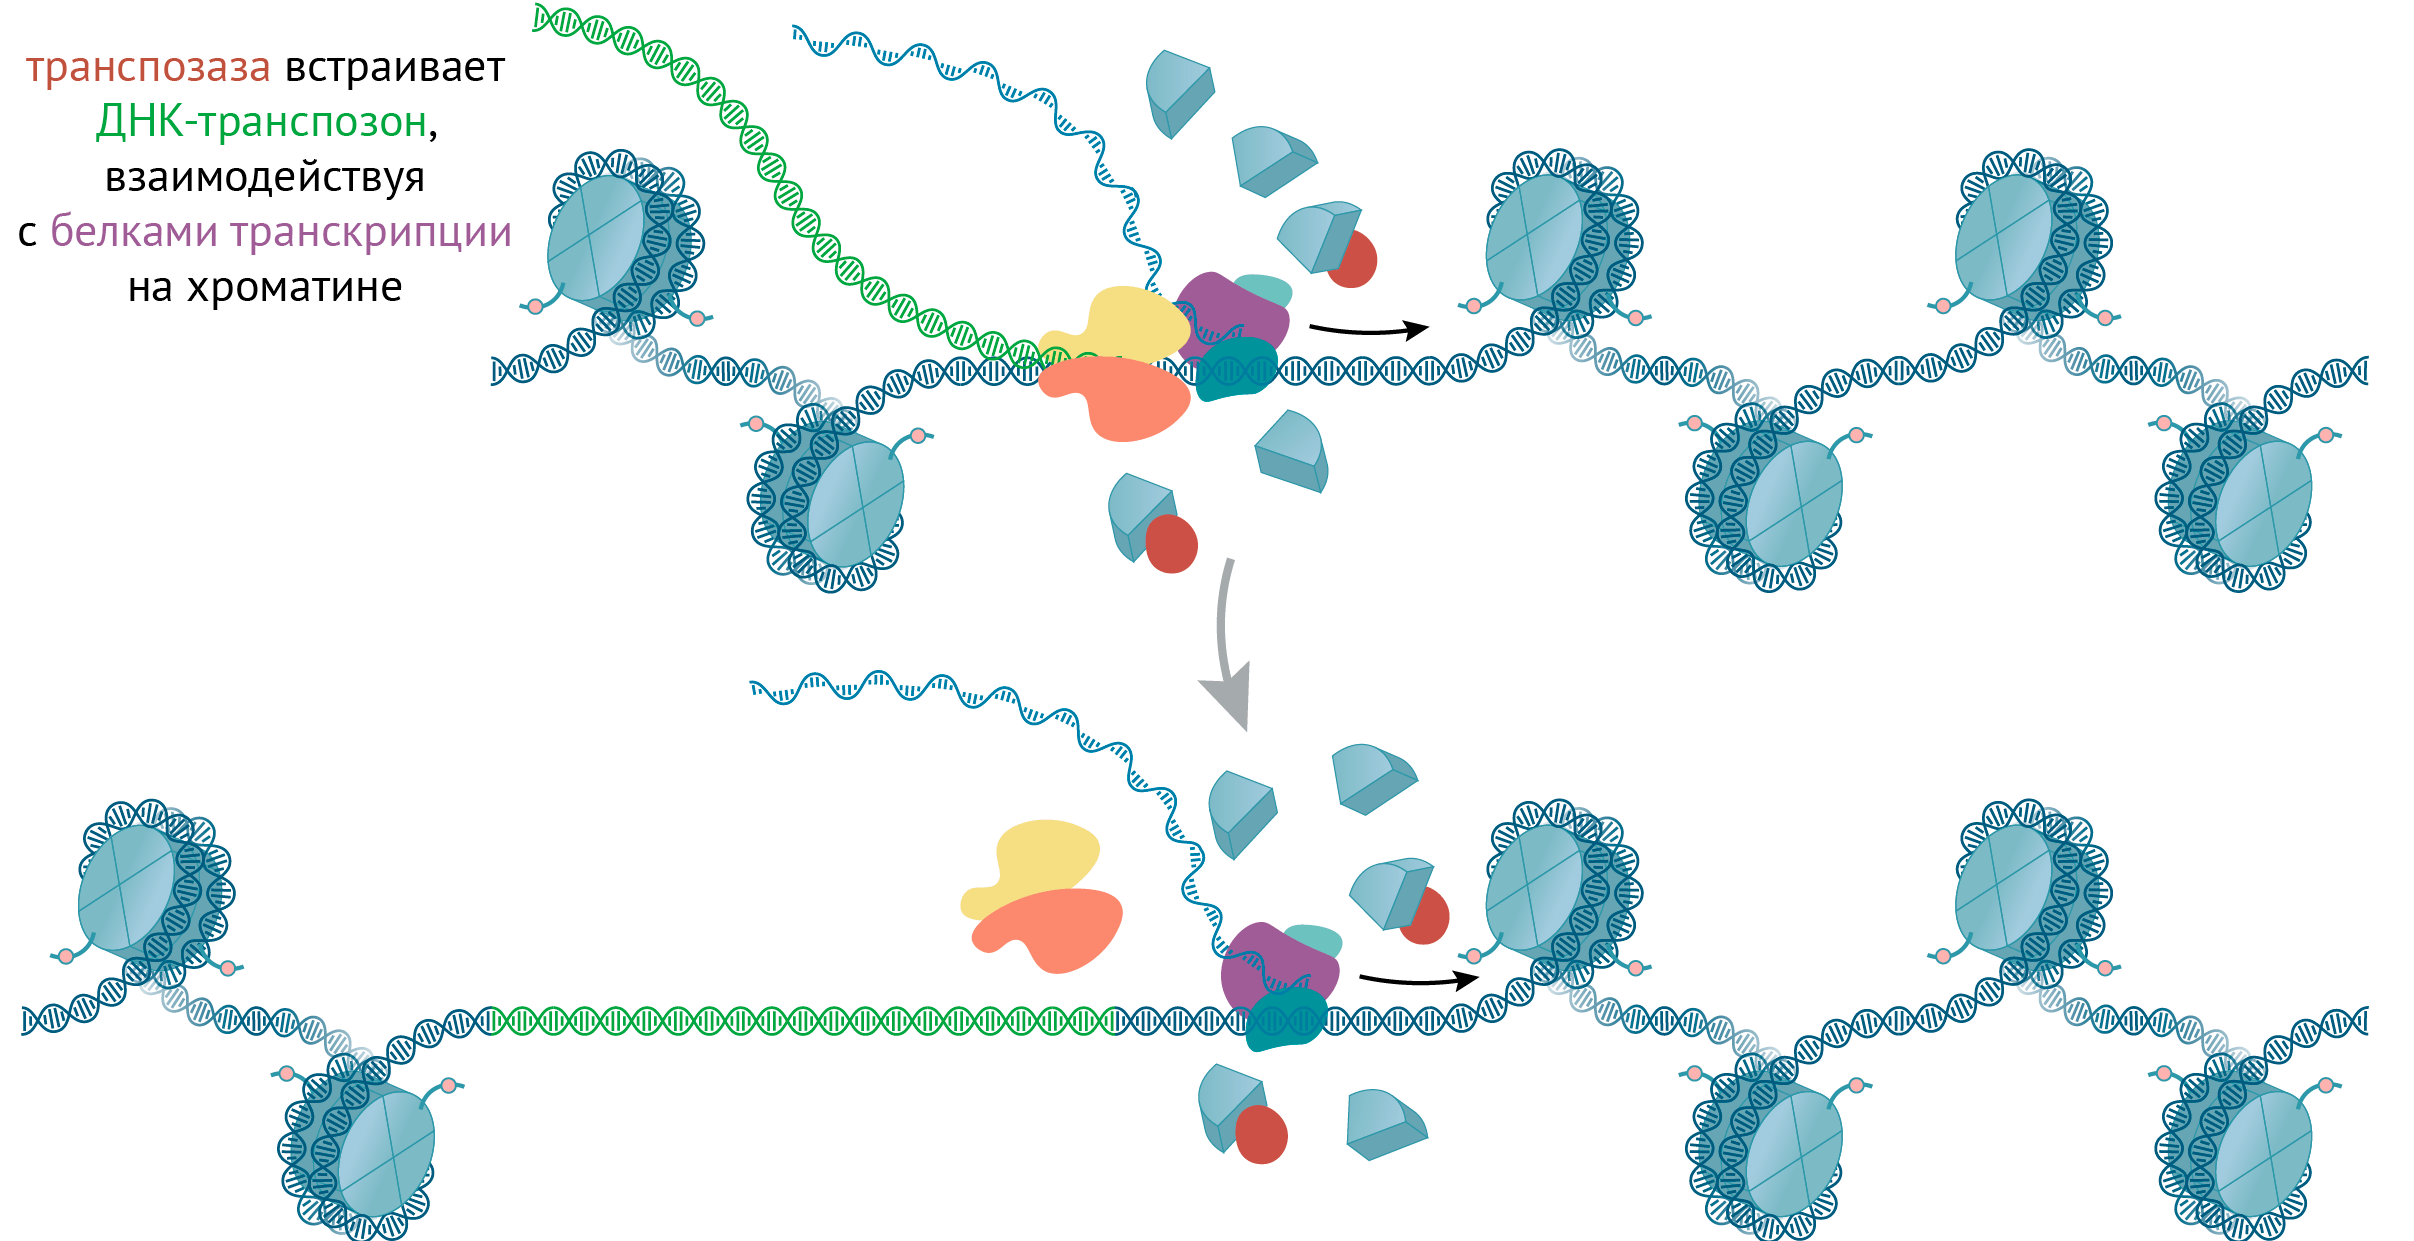 Транспозаза встраивает ДНК-транспозон